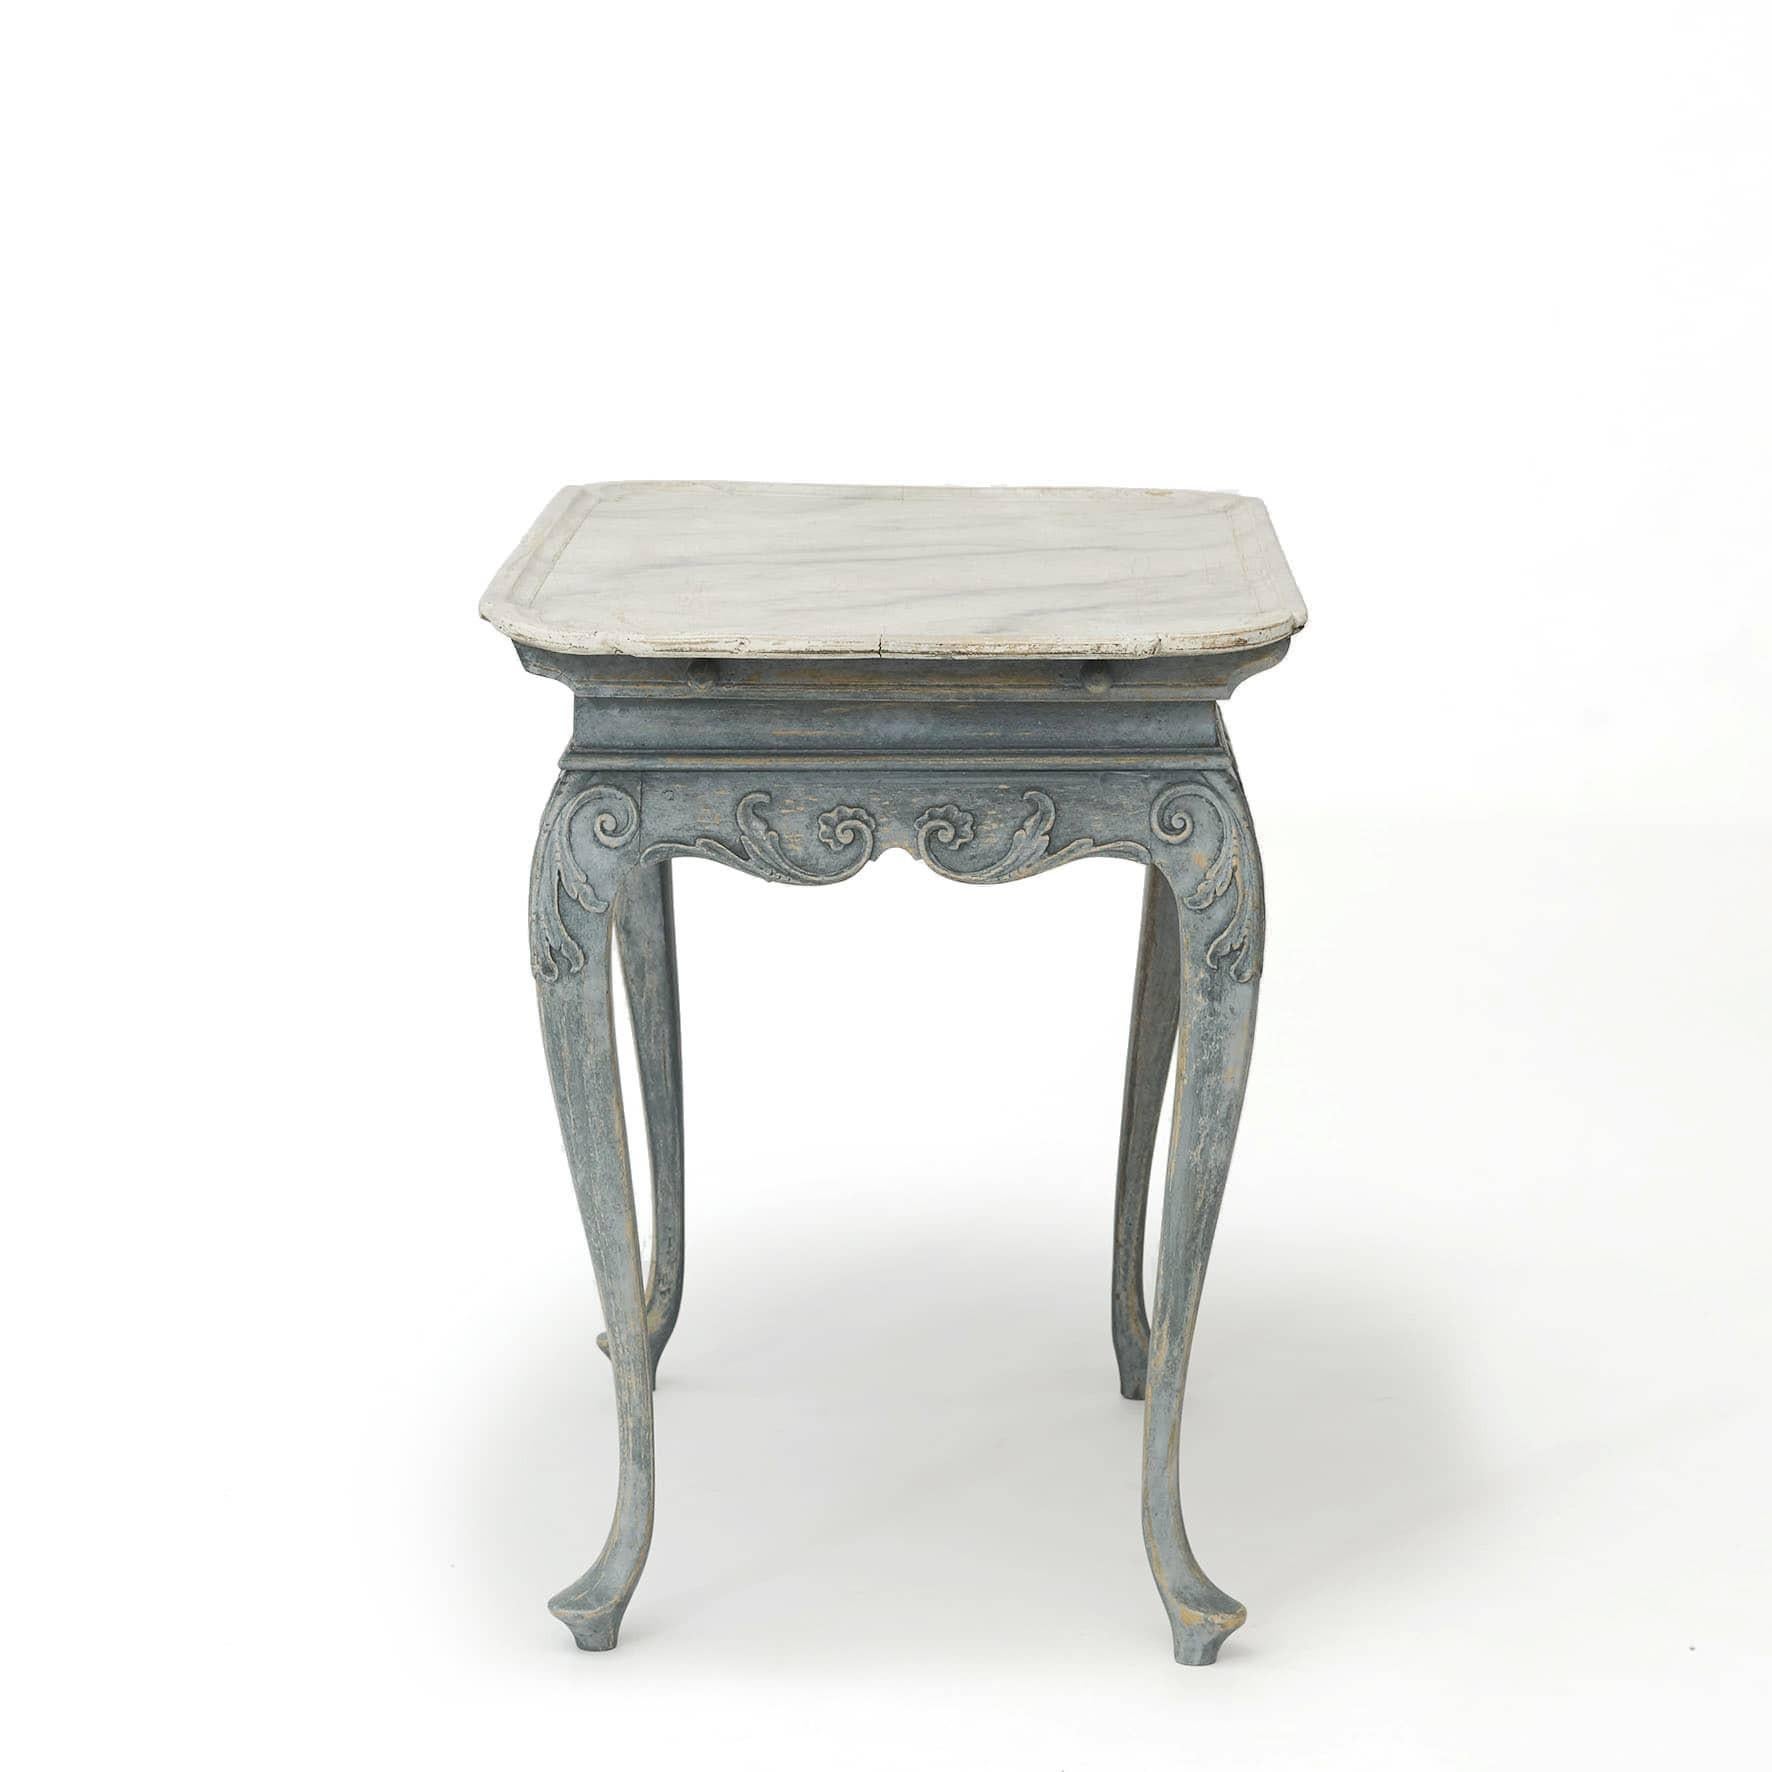 Une belle table de plateau rococo antique danoise.

La table est finie avec une base bleue poussiéreuse (restaurée par un restaurateur professionnel) et un dessus en faux marbre peint en gris doux.
Base avec jupe sculptée de feuillages et de